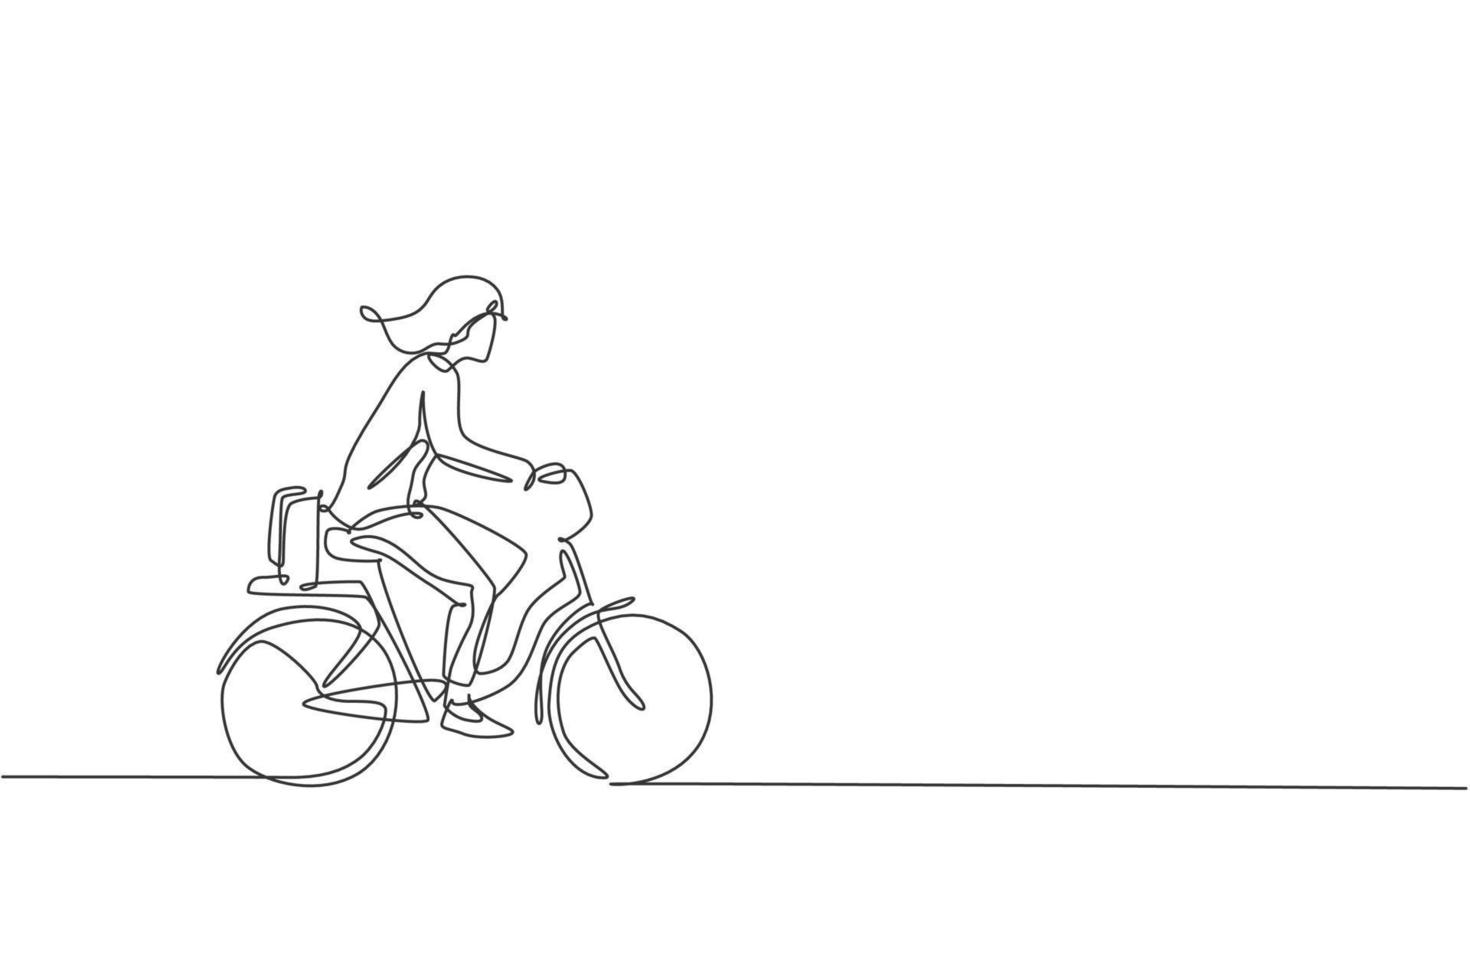 único desenho de linha contínua de jovem empresária profissional andando de bicicleta para sua empresa. bicicleta para o trabalho, conceito de transporte ecológico. ilustração em vetor design de desenho de uma linha na moda